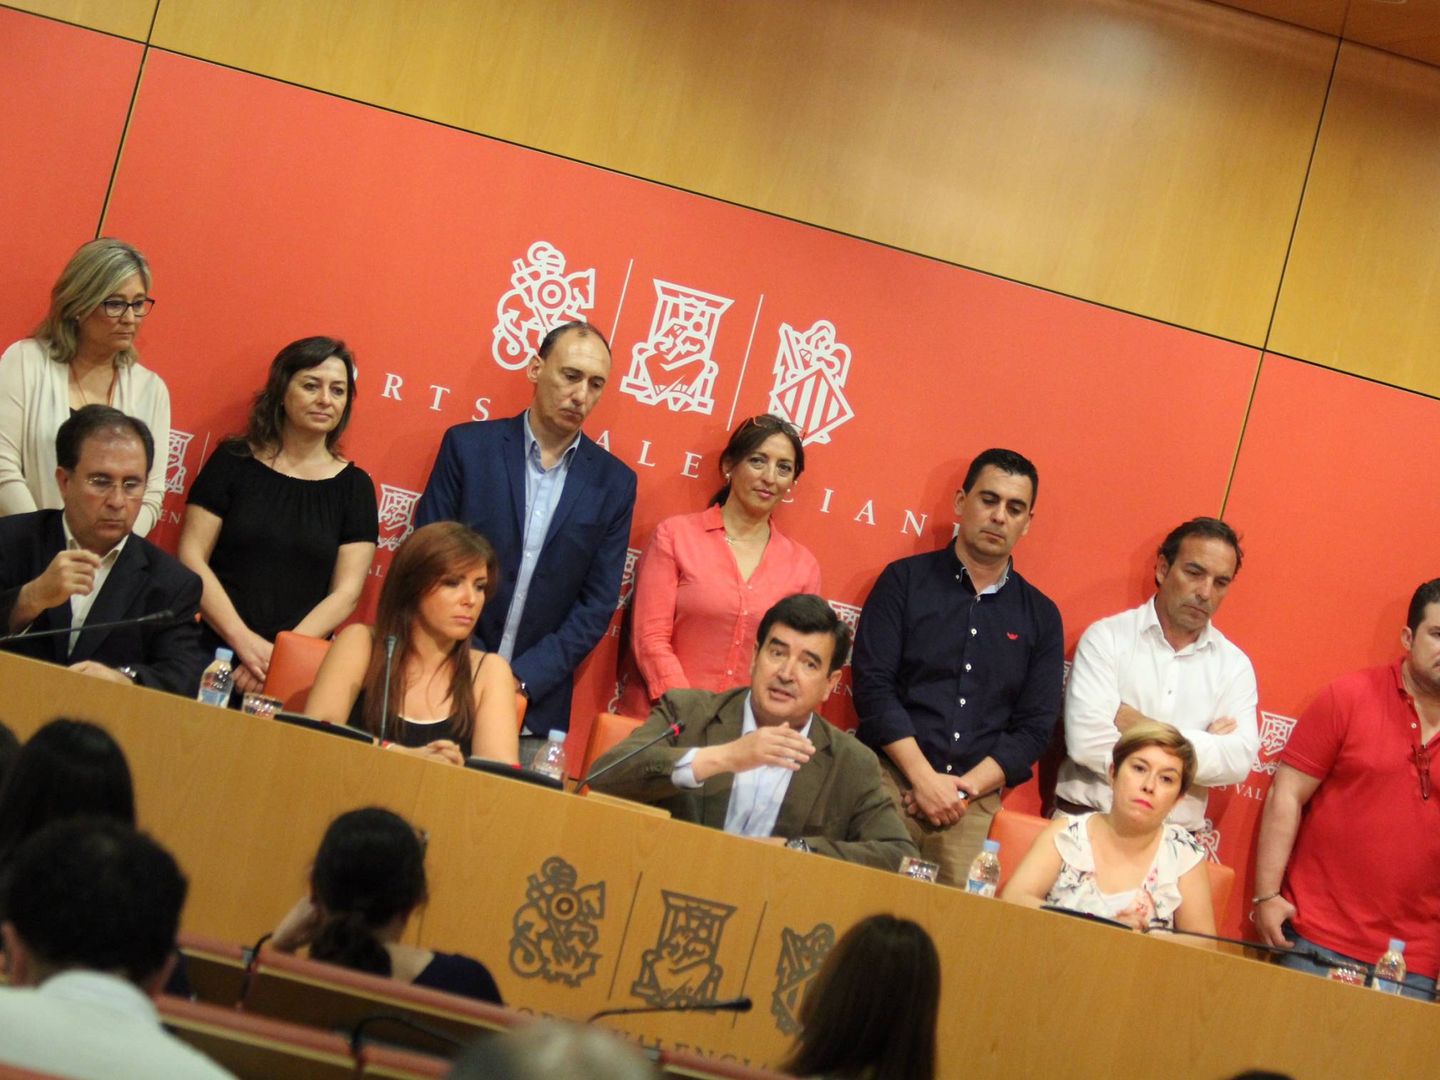 Fernando Giner (c) y Mari Carmen Sánchez, a su izquierda, rodeados de diputados de Ciudadanos, en la comparecencia de respuesta a la fuga de Alexis Marí en junio del año pasado. (Cs)